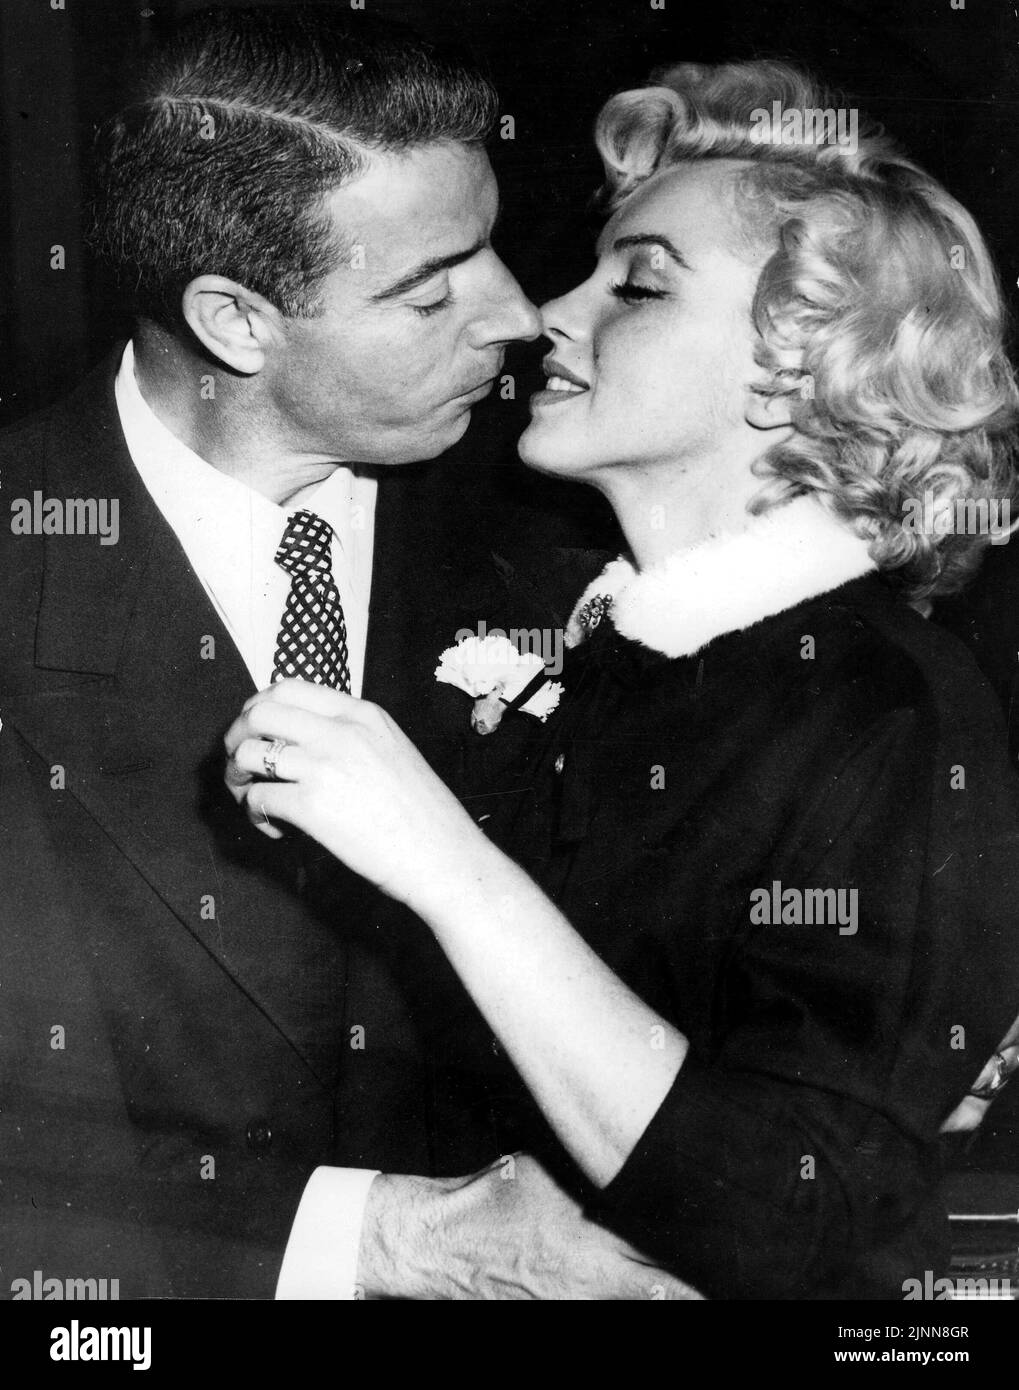 Marilyn Monroe se prépare à embrasser son mari Joe DiMaggio, ancien joueur de baseball américain, après leur mariage sur 14 janvier 1954 Banque D'Images